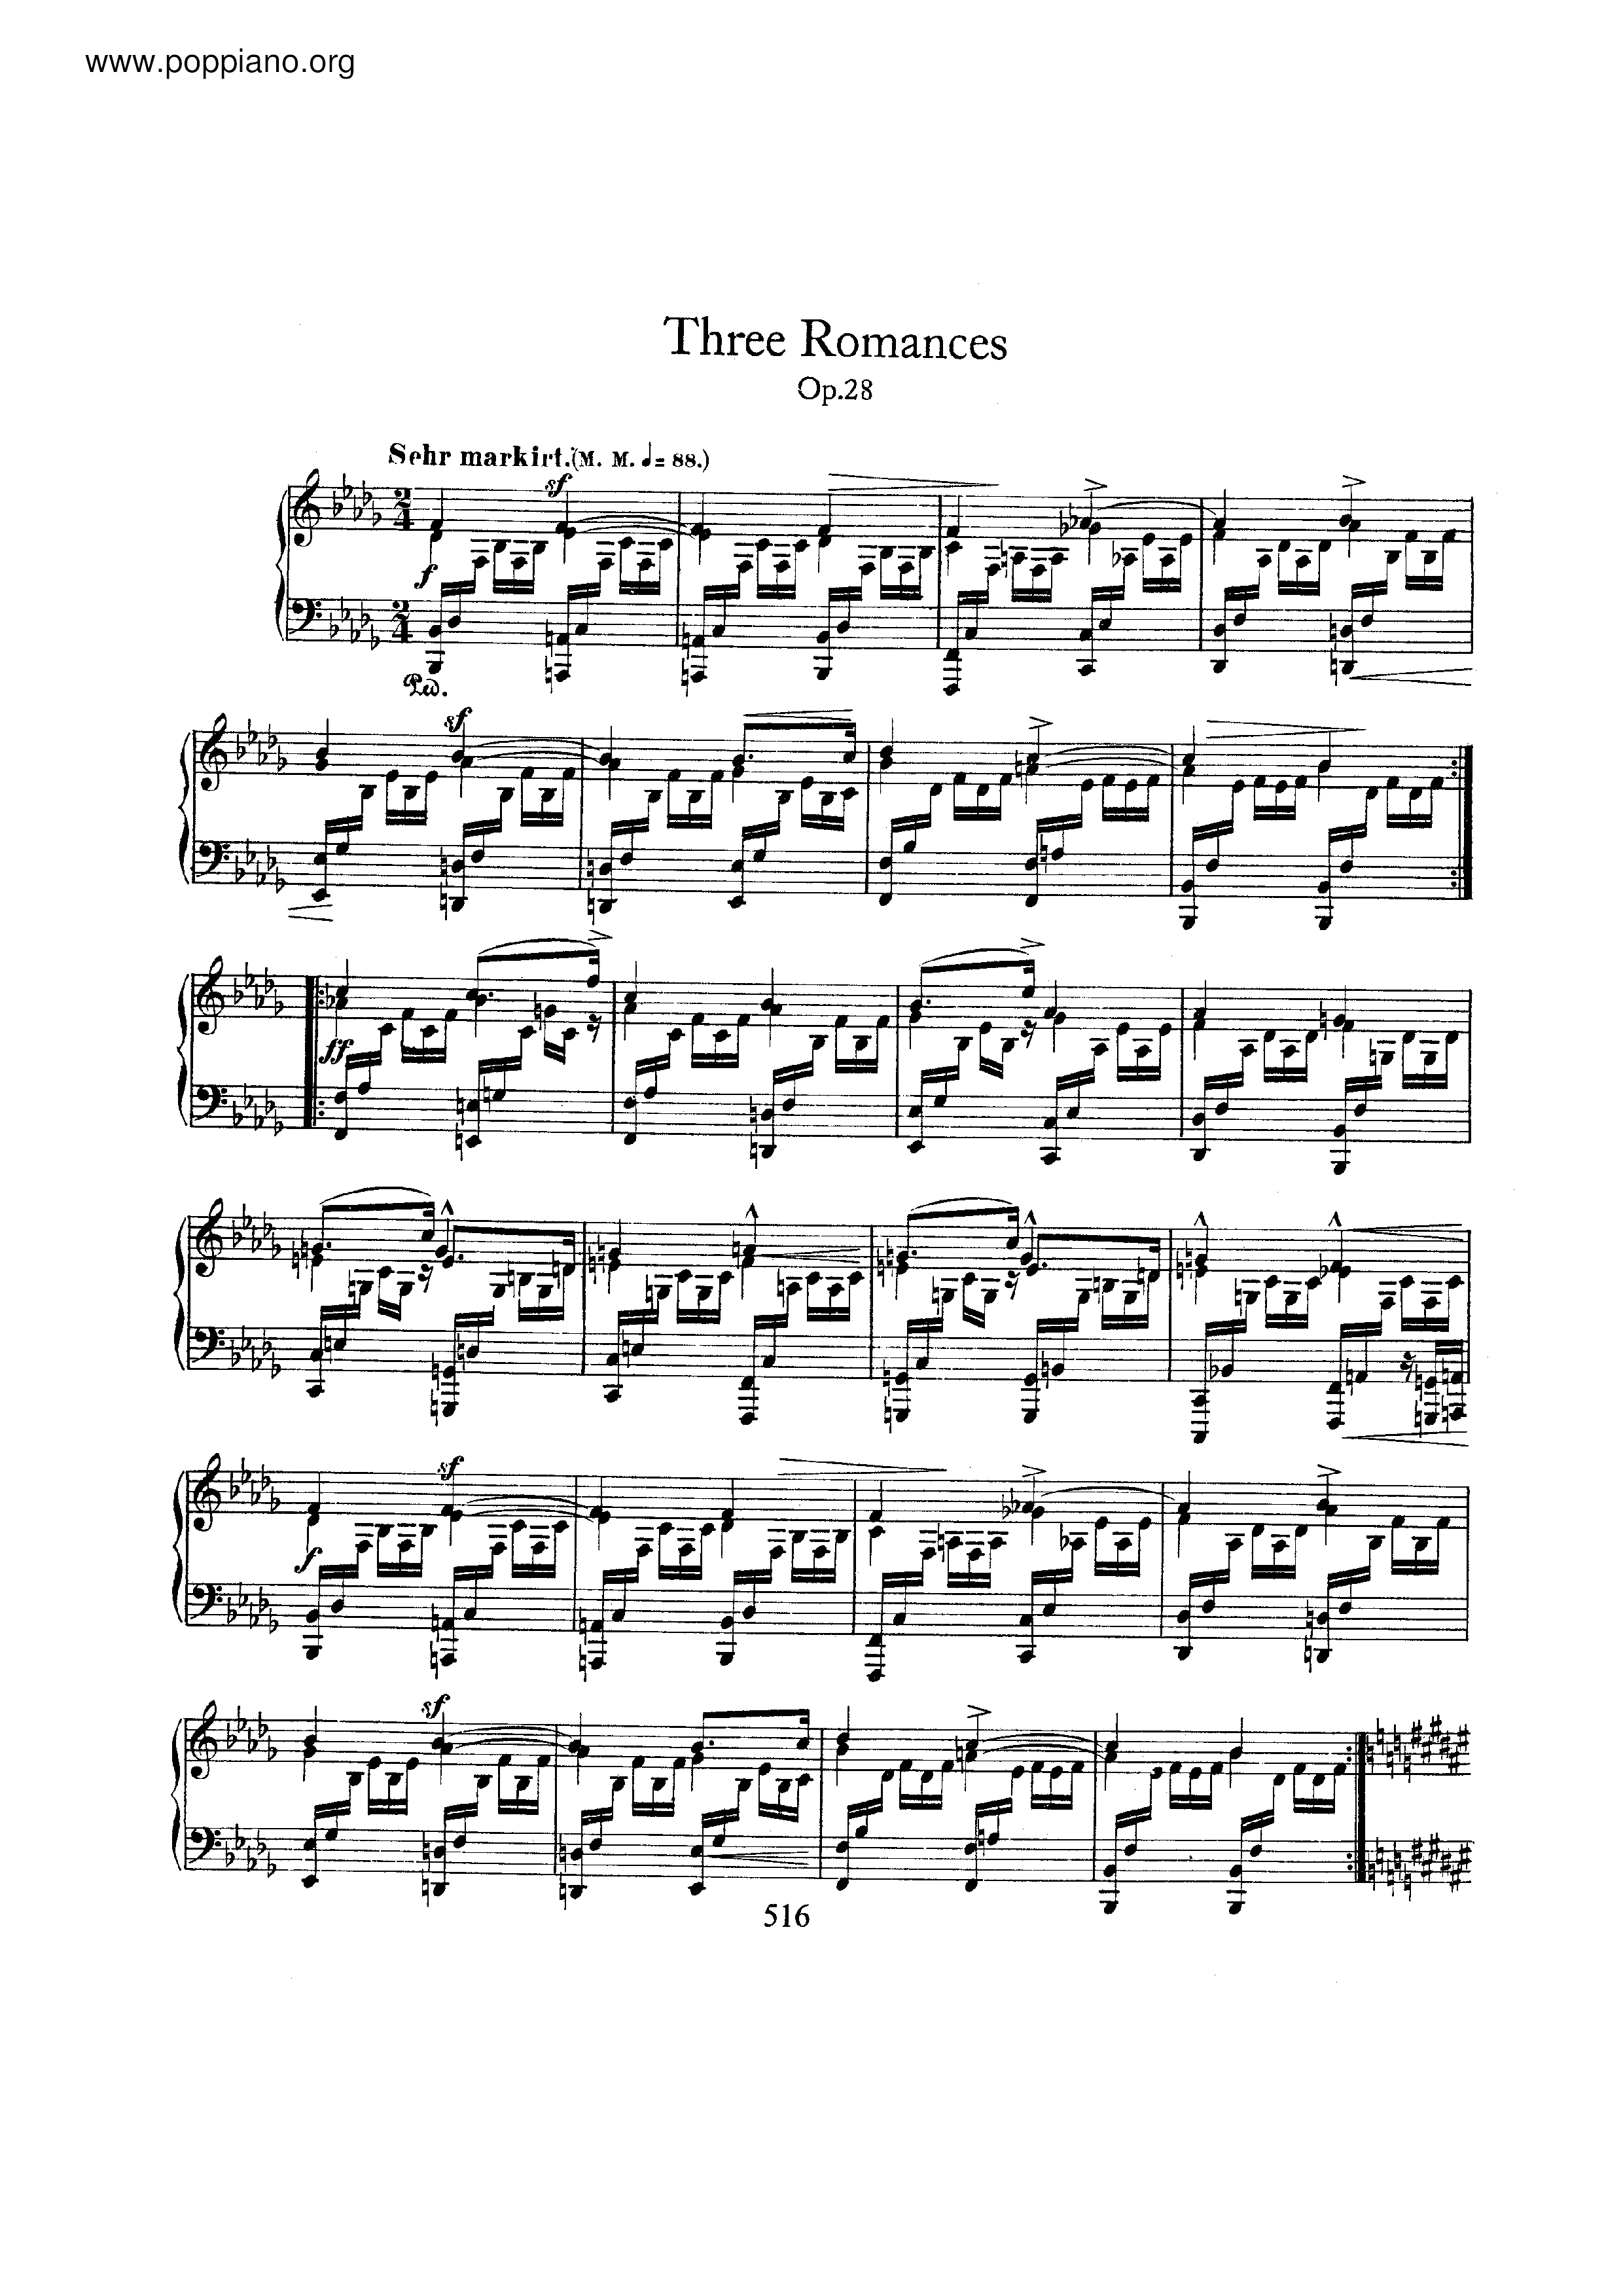 3 Romances, Op.28 Score